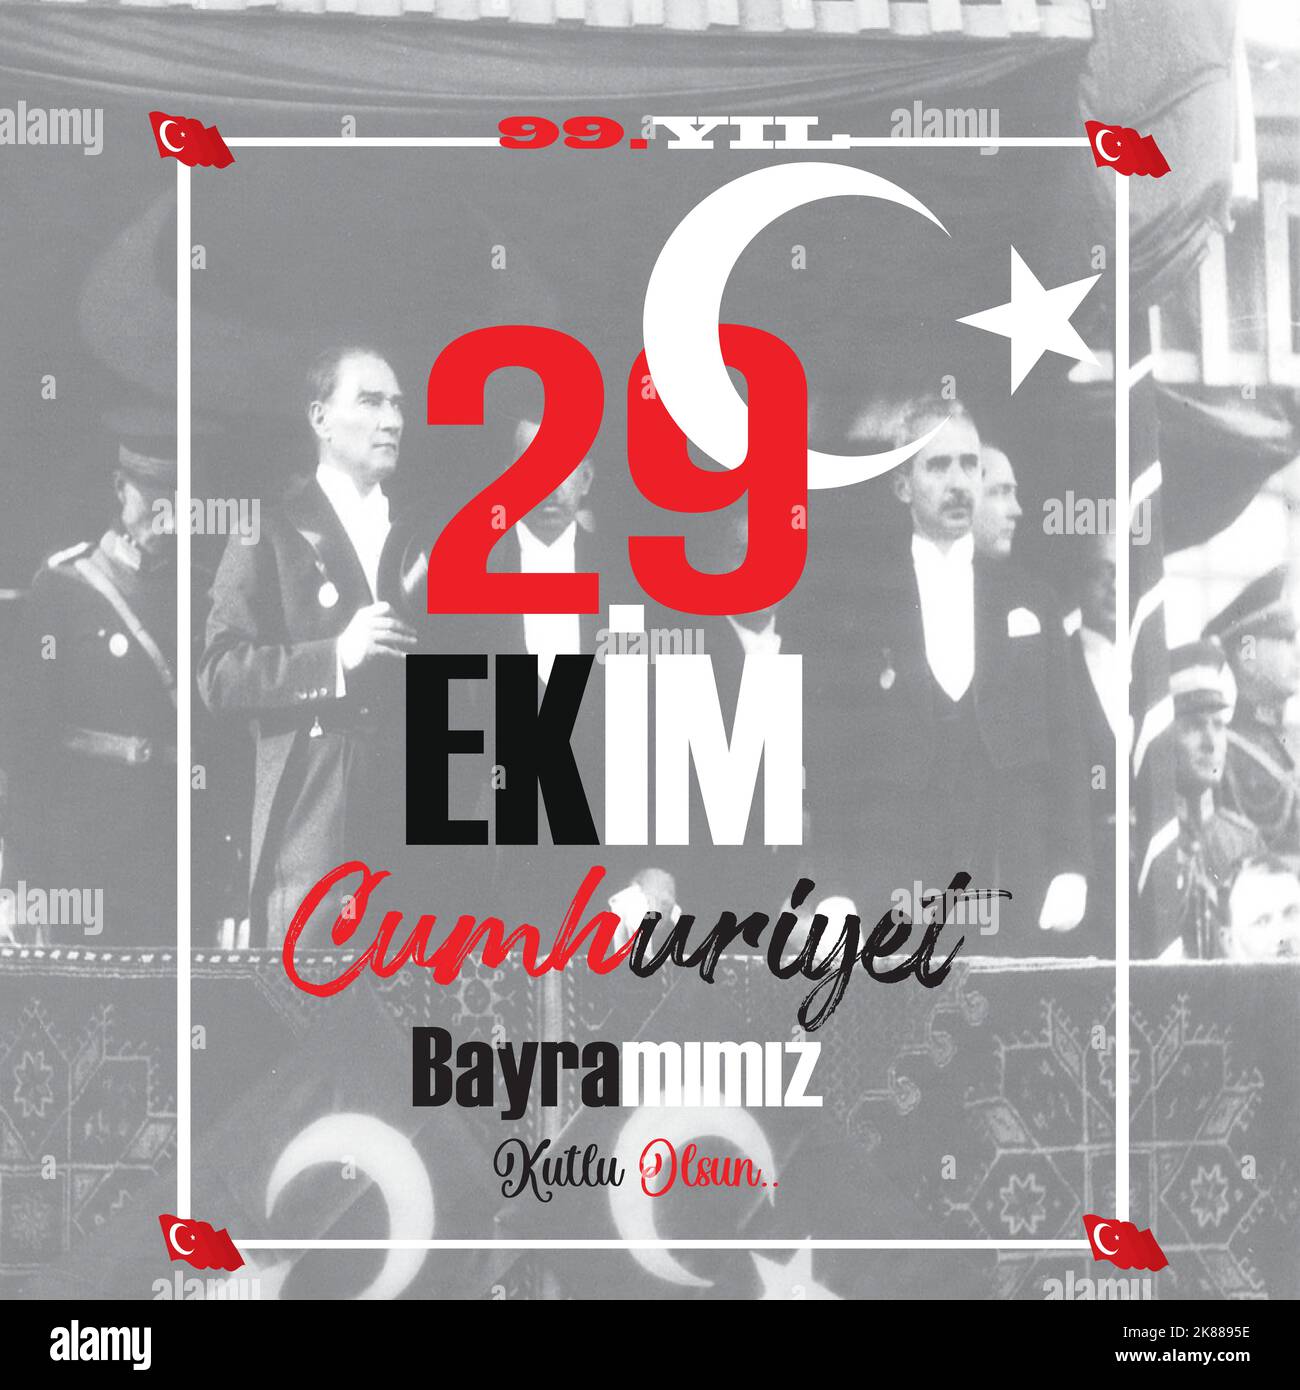 Festival Nazionale Turco. 29 Ekim Cumhuriyet Bayrami. Traduzione: Buon 29th ottobre Giornata della Repubblica. Giornata Nazionale in Turchia. Illustrazione Vettoriale